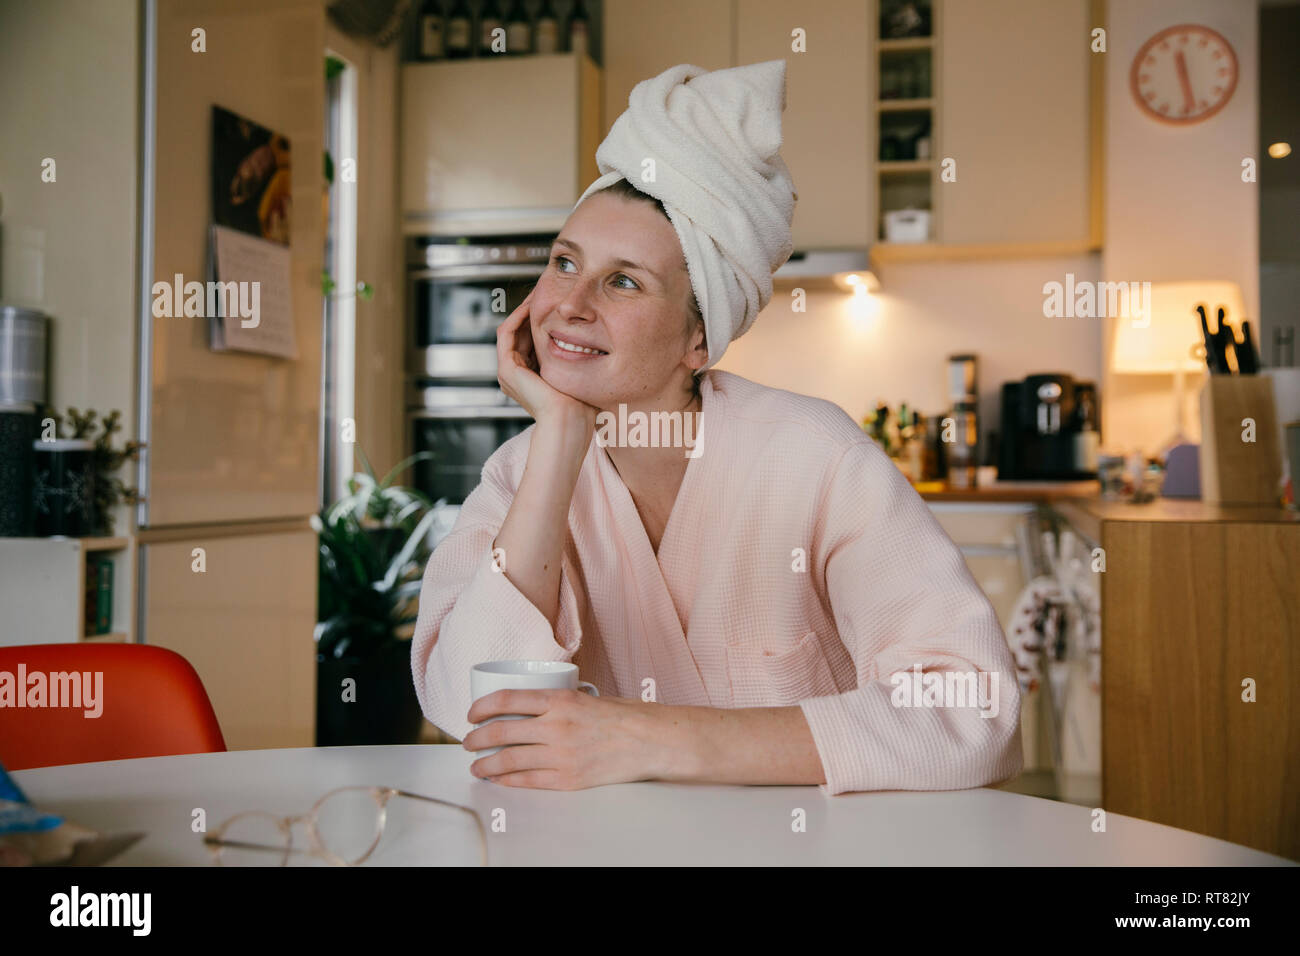 Retrato de mujer sonriente vistiendo una toalla turbante sentado con una taza de café en la mesa de la cocina Foto de stock